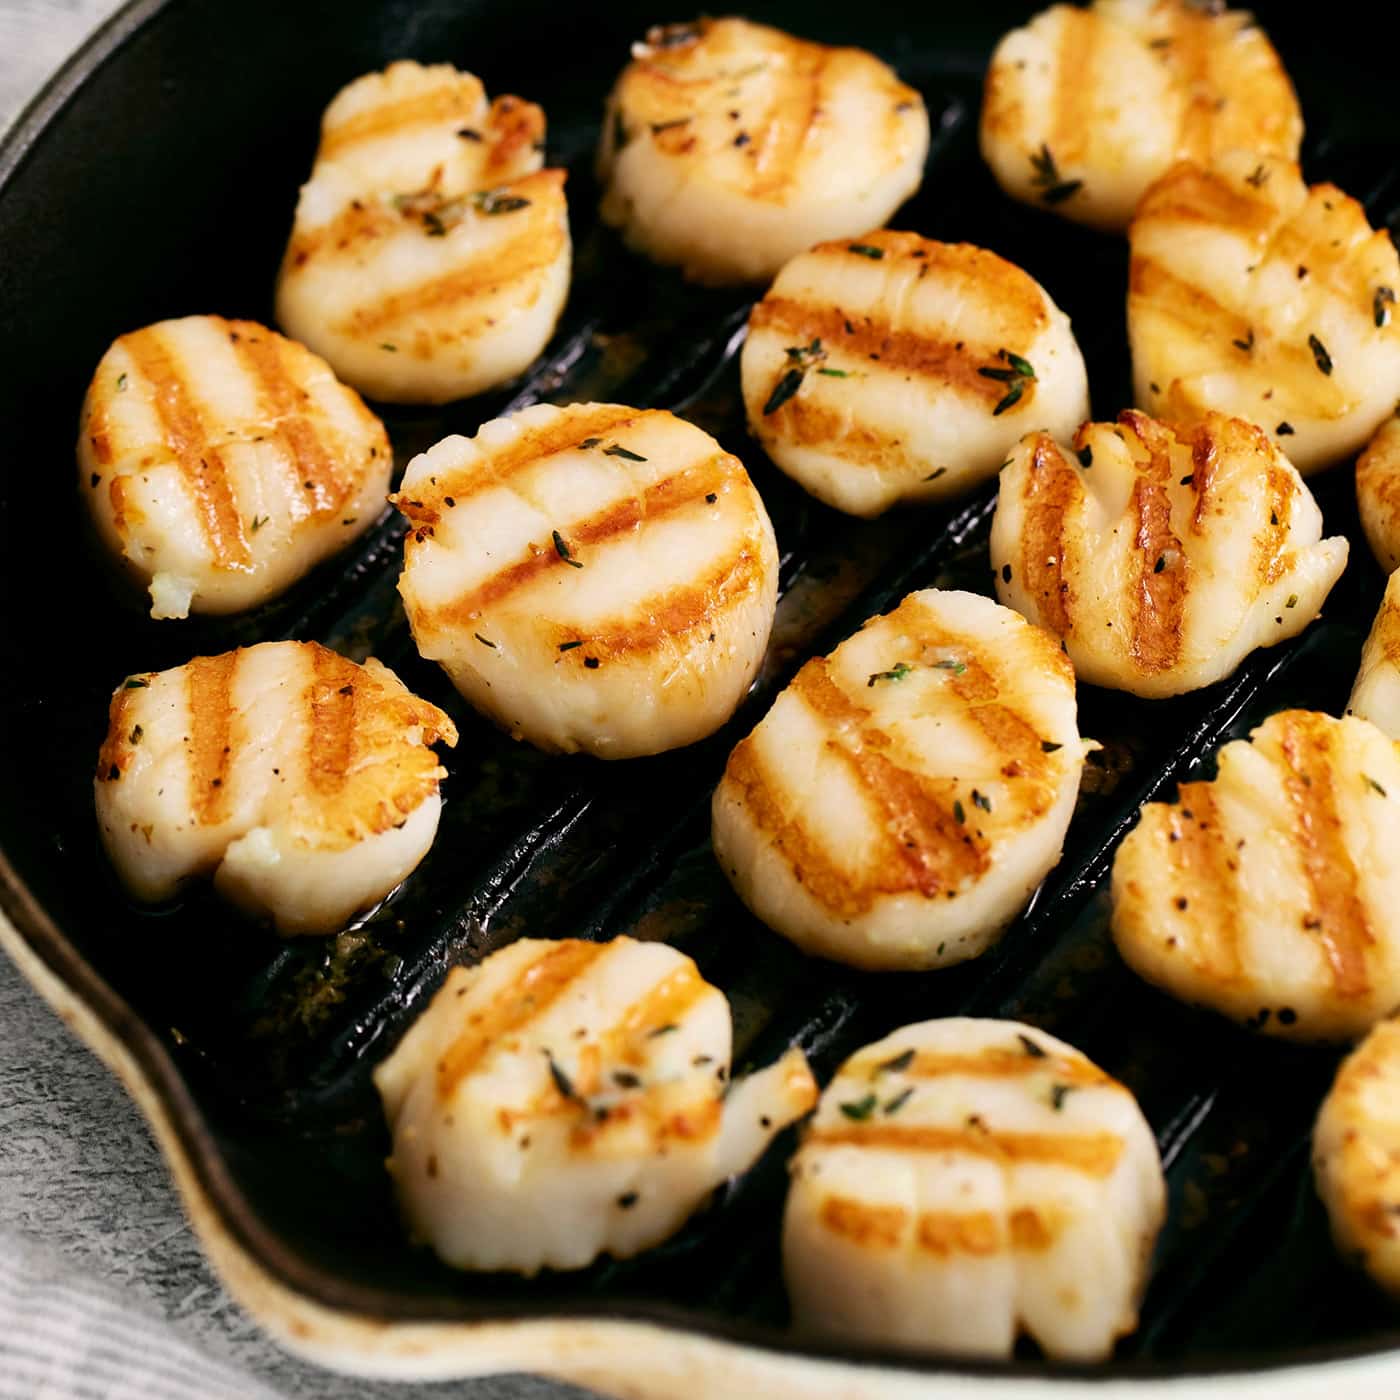 Seared scallops in a grill pan